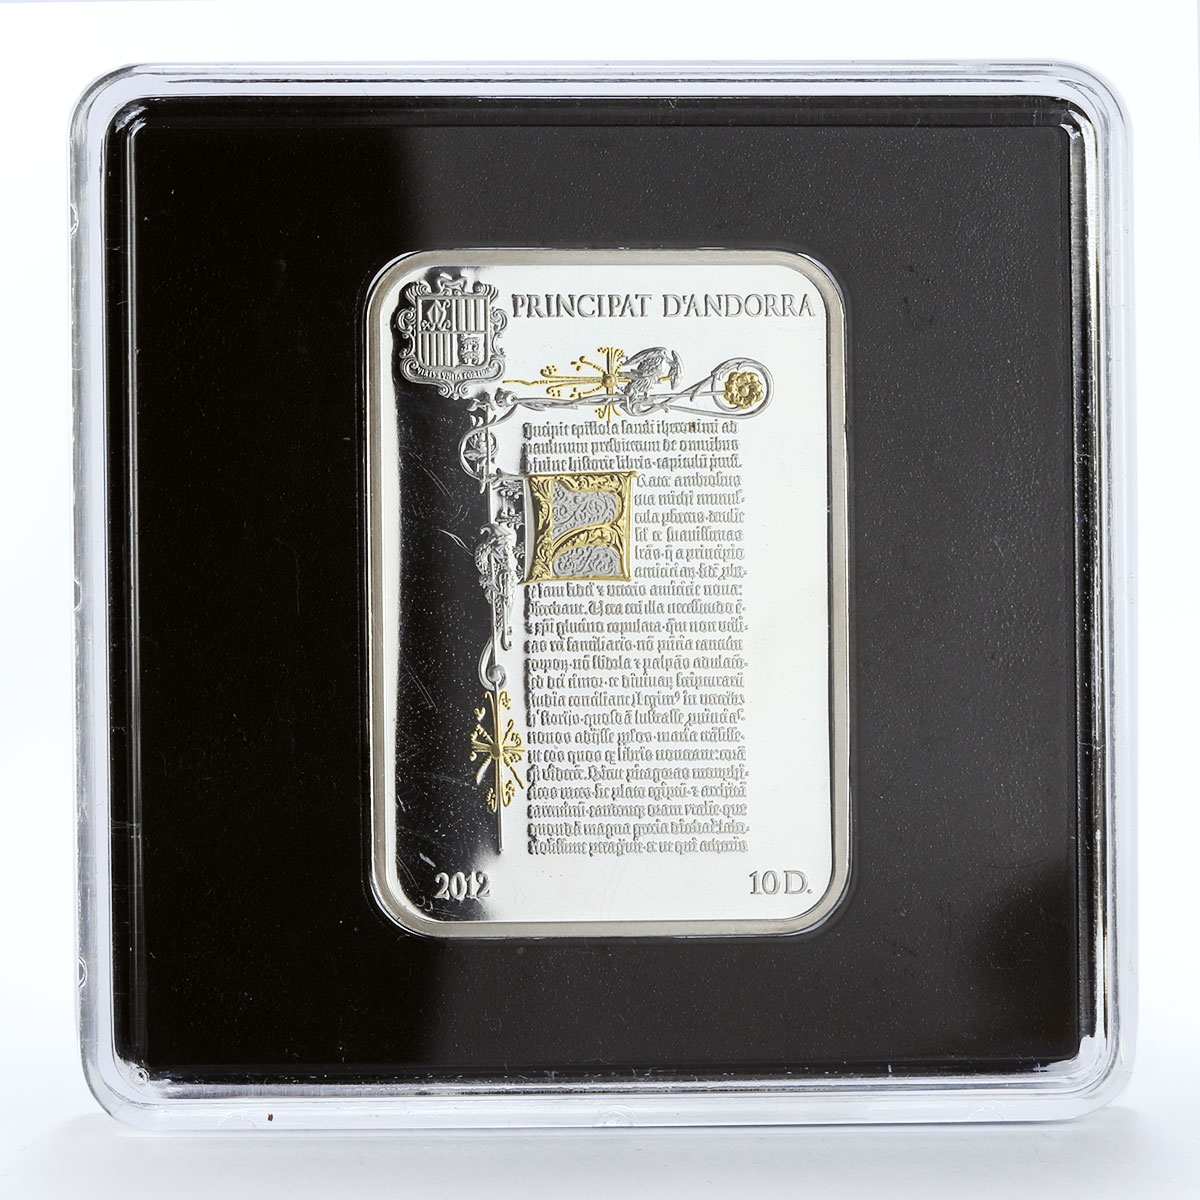 Andorra 10 diners Religion Faith Moses Sinai Mountain gilded silver coin 2012